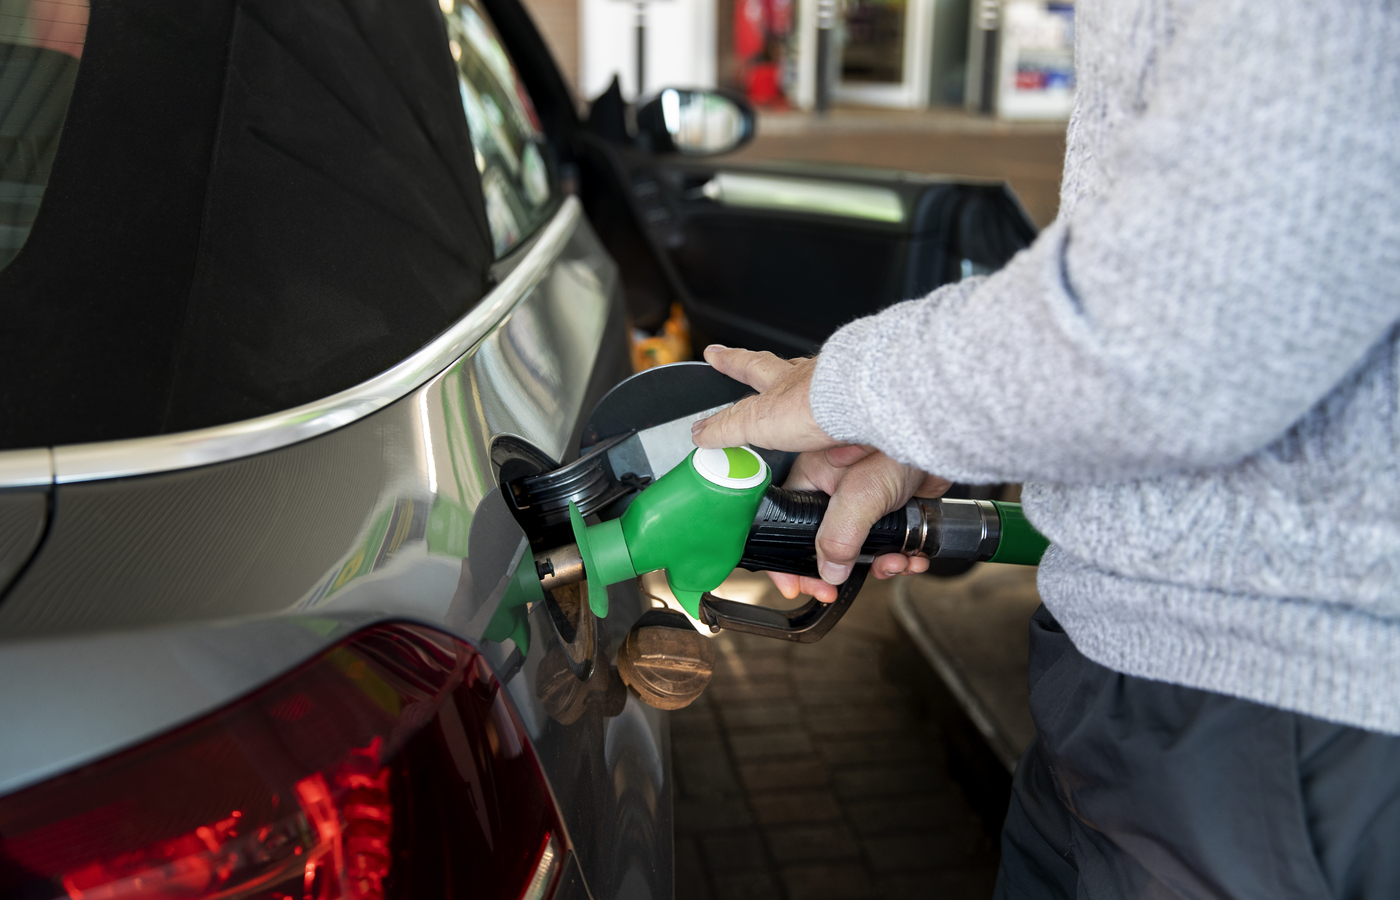 Los precios de los combustibles son una barrera para que los brasileños compren vehículos, según investigación